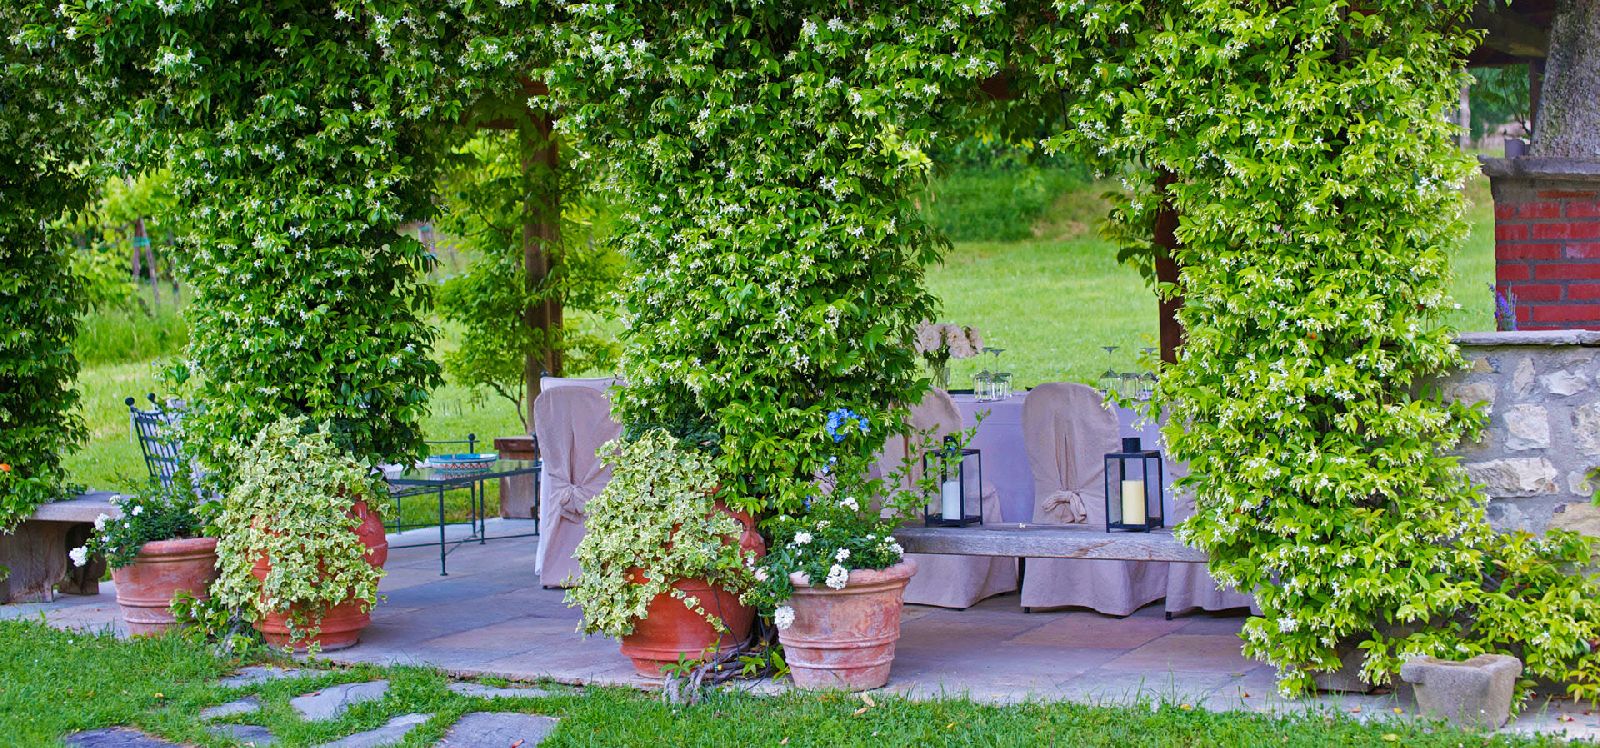 Loggia in the beautiful gardens of villa Casale di Fiesole in Tuscany